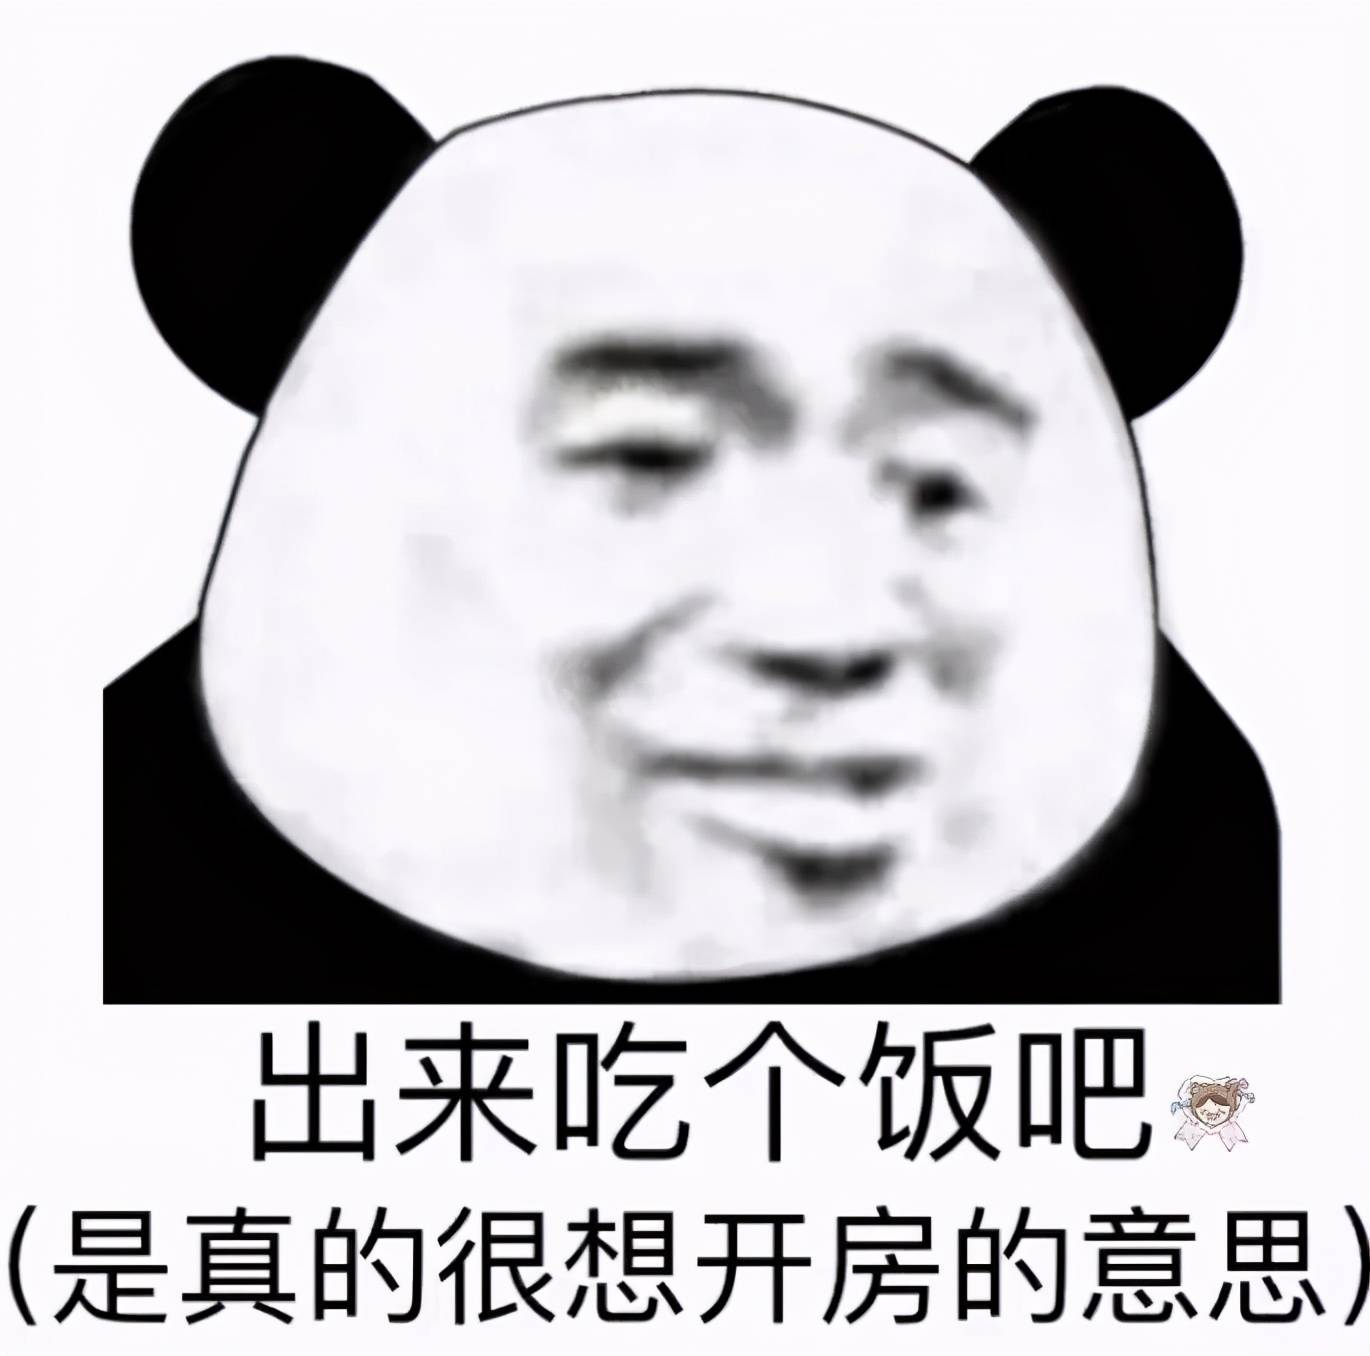 熊猫头表情包:我的家庭条件根本支持不了我过冬